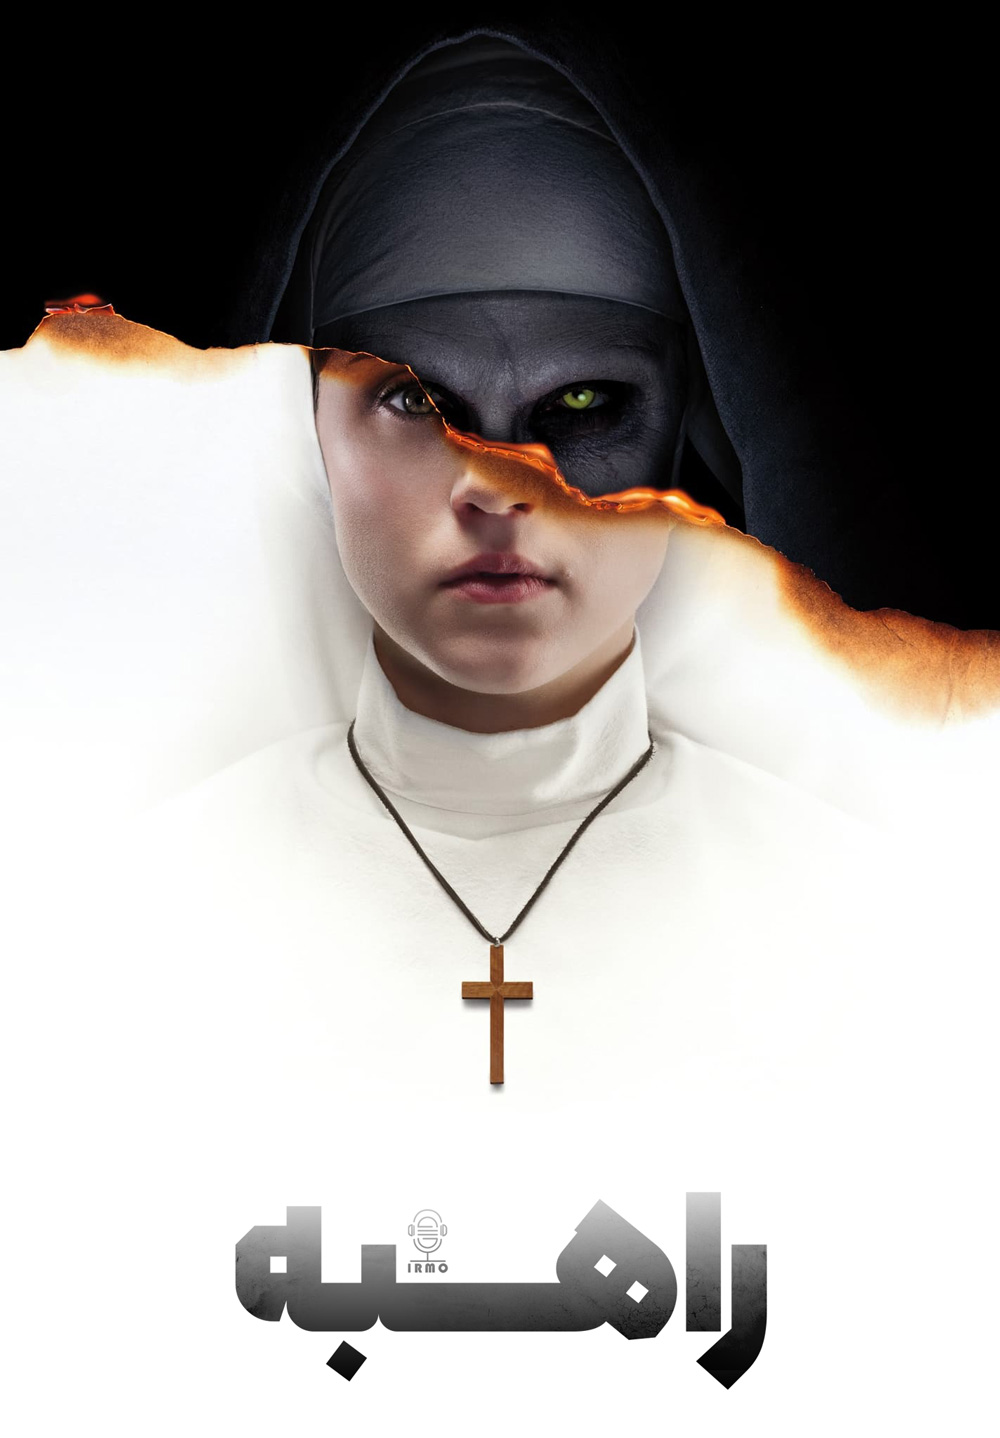 دانلود صوت دوبله فیلم The Nun